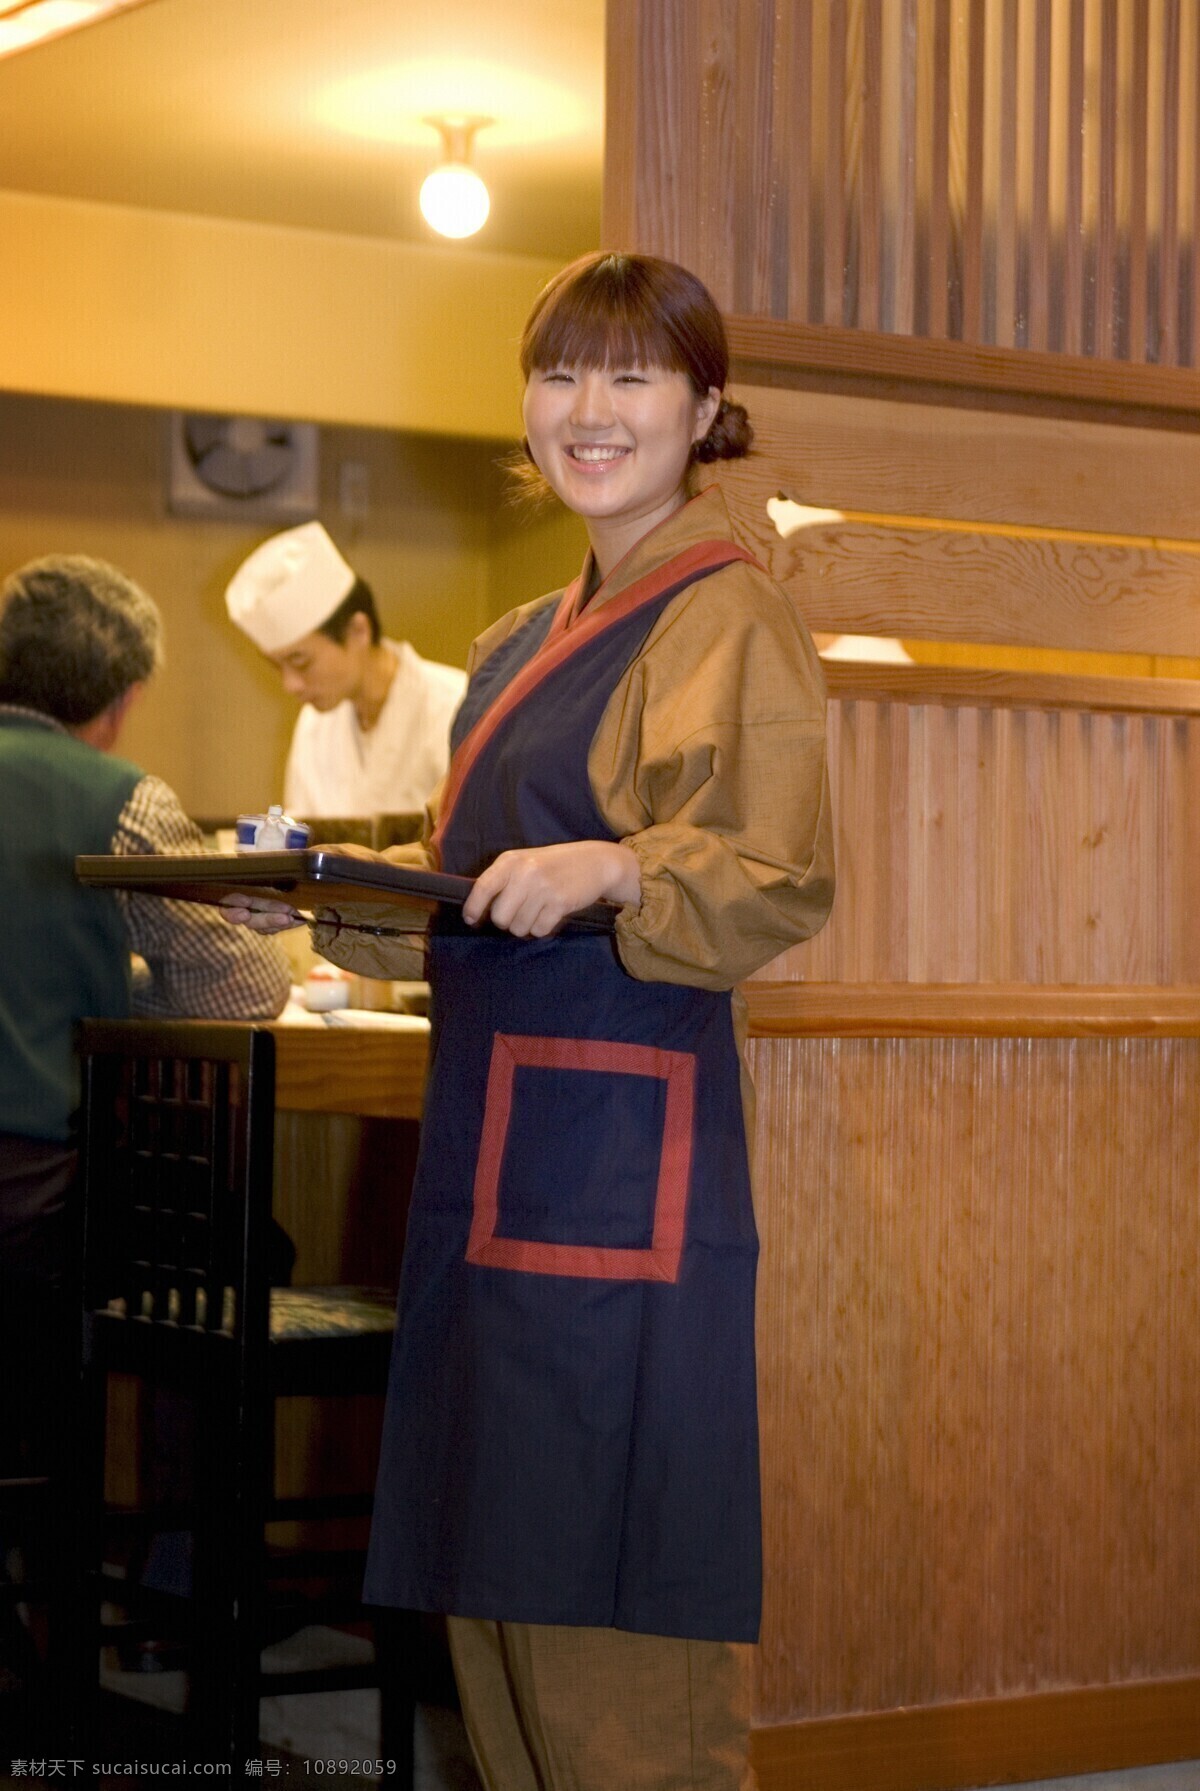 餐饮 服务员 职业人物 职业女性 职业男性 男人 女人 兼职工作 餐饮工作者 餐饮业 生活人物 人物图片